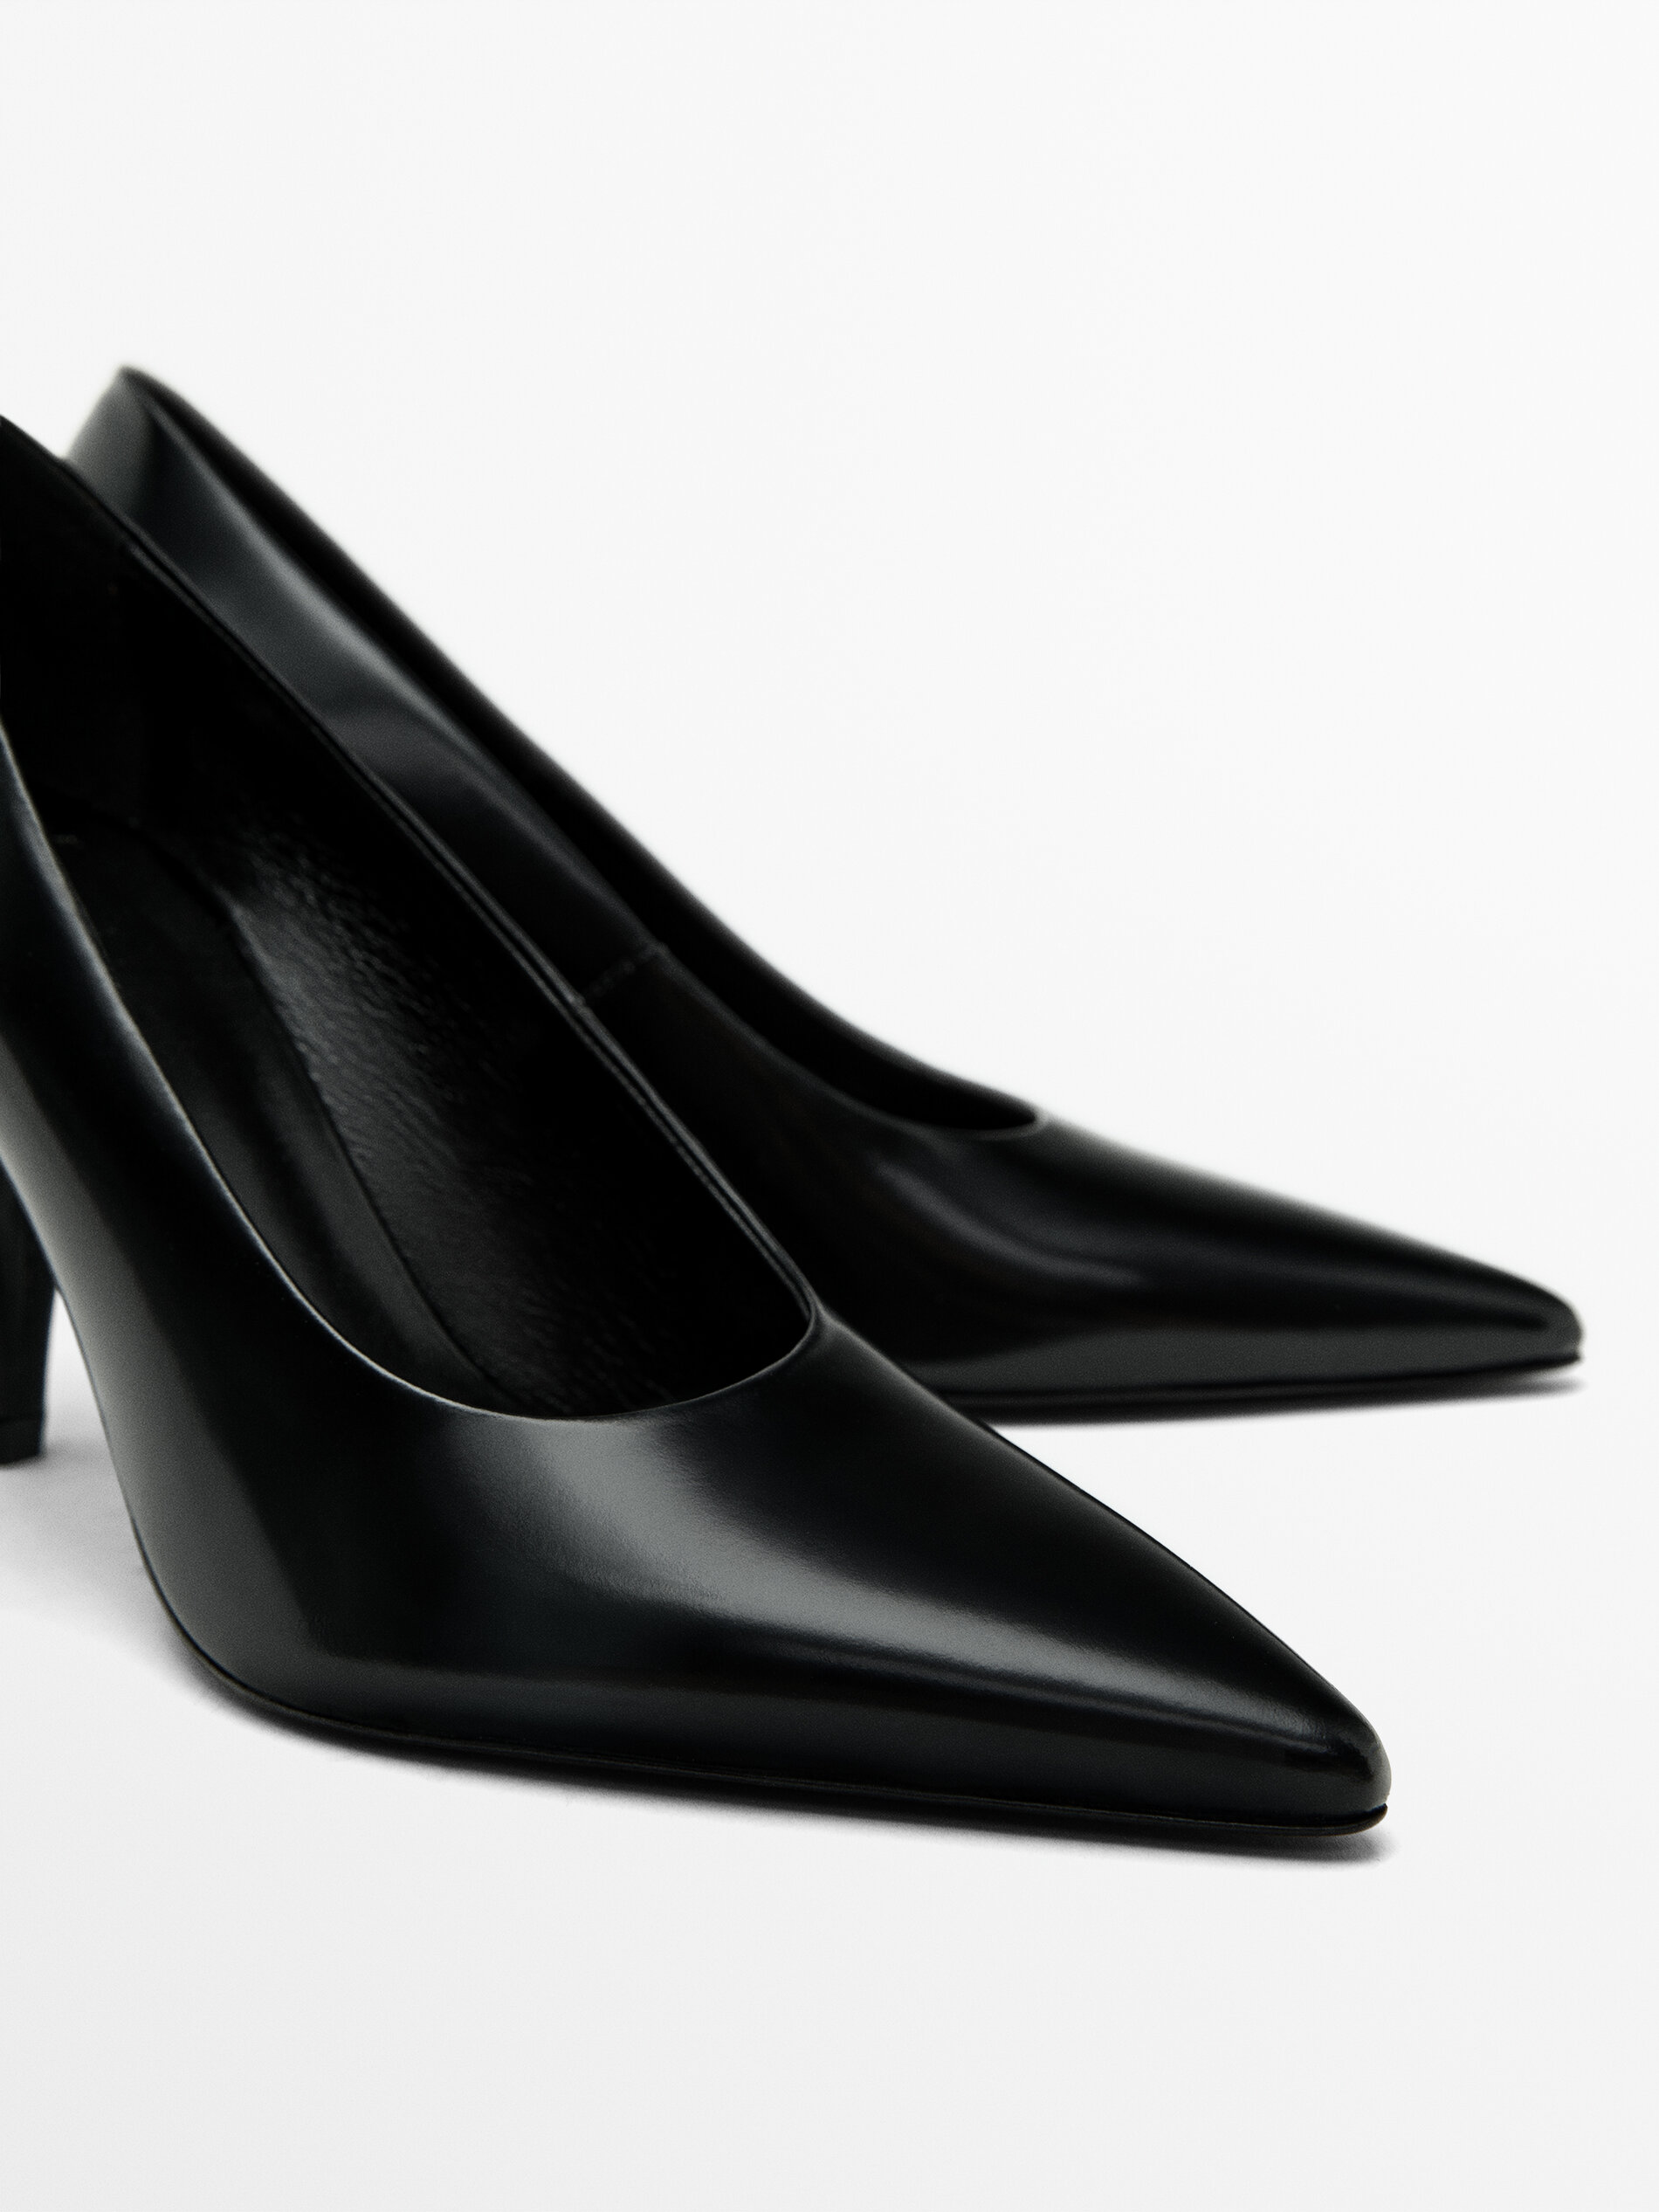 Heels under 500 Meesho haul | Heels, Womens heels, Sandals heels